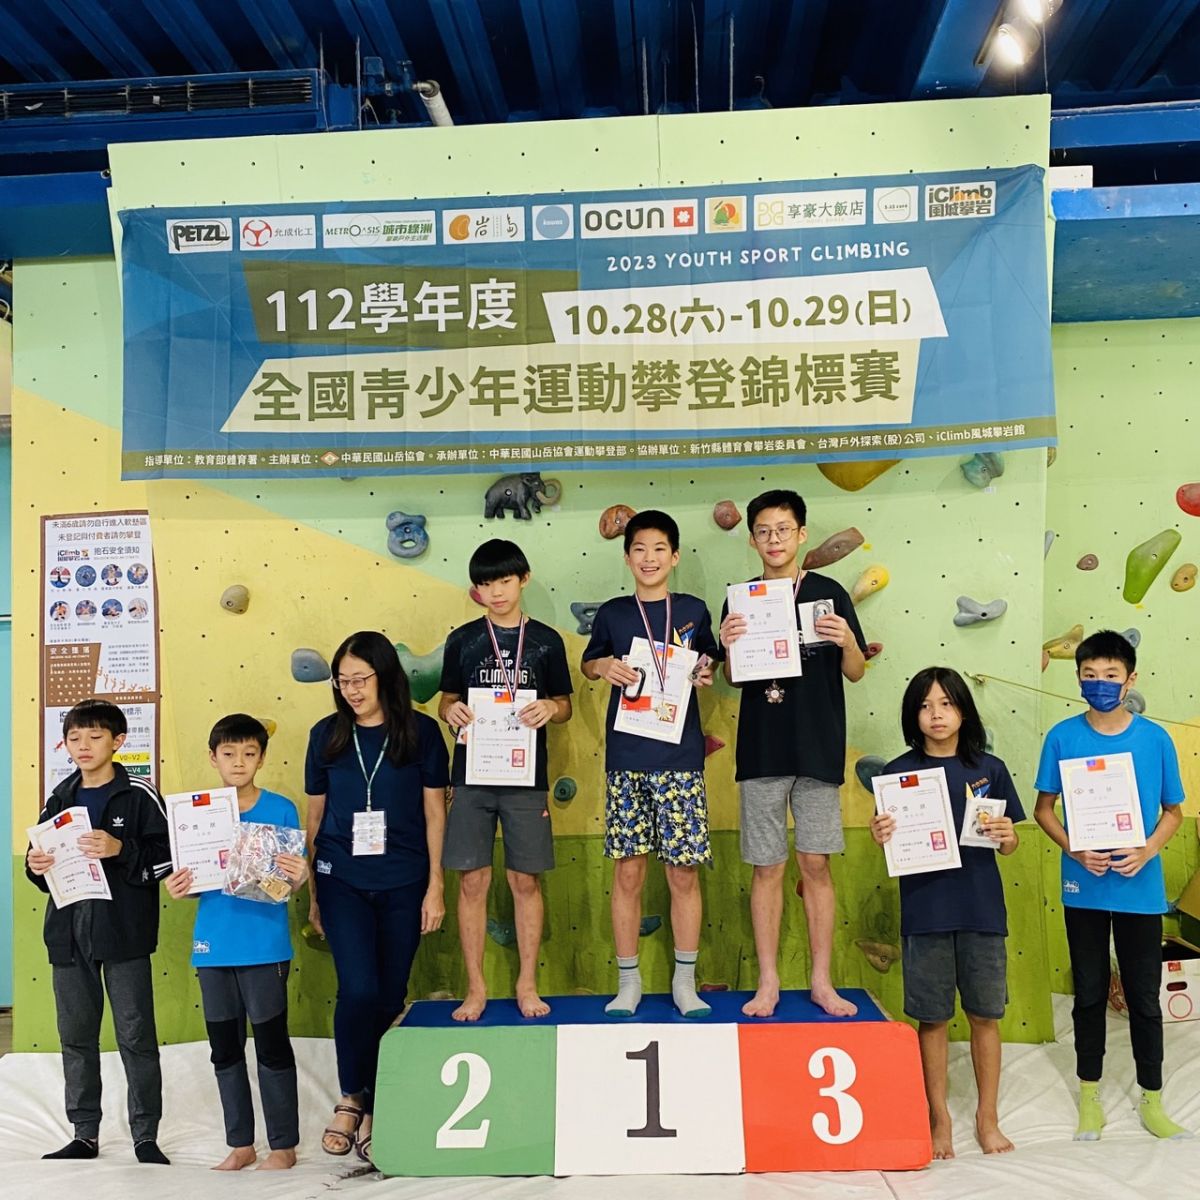 703洪楚崴同學參加112學年度全國青少年運動攀登錦標賽榮獲冠軍